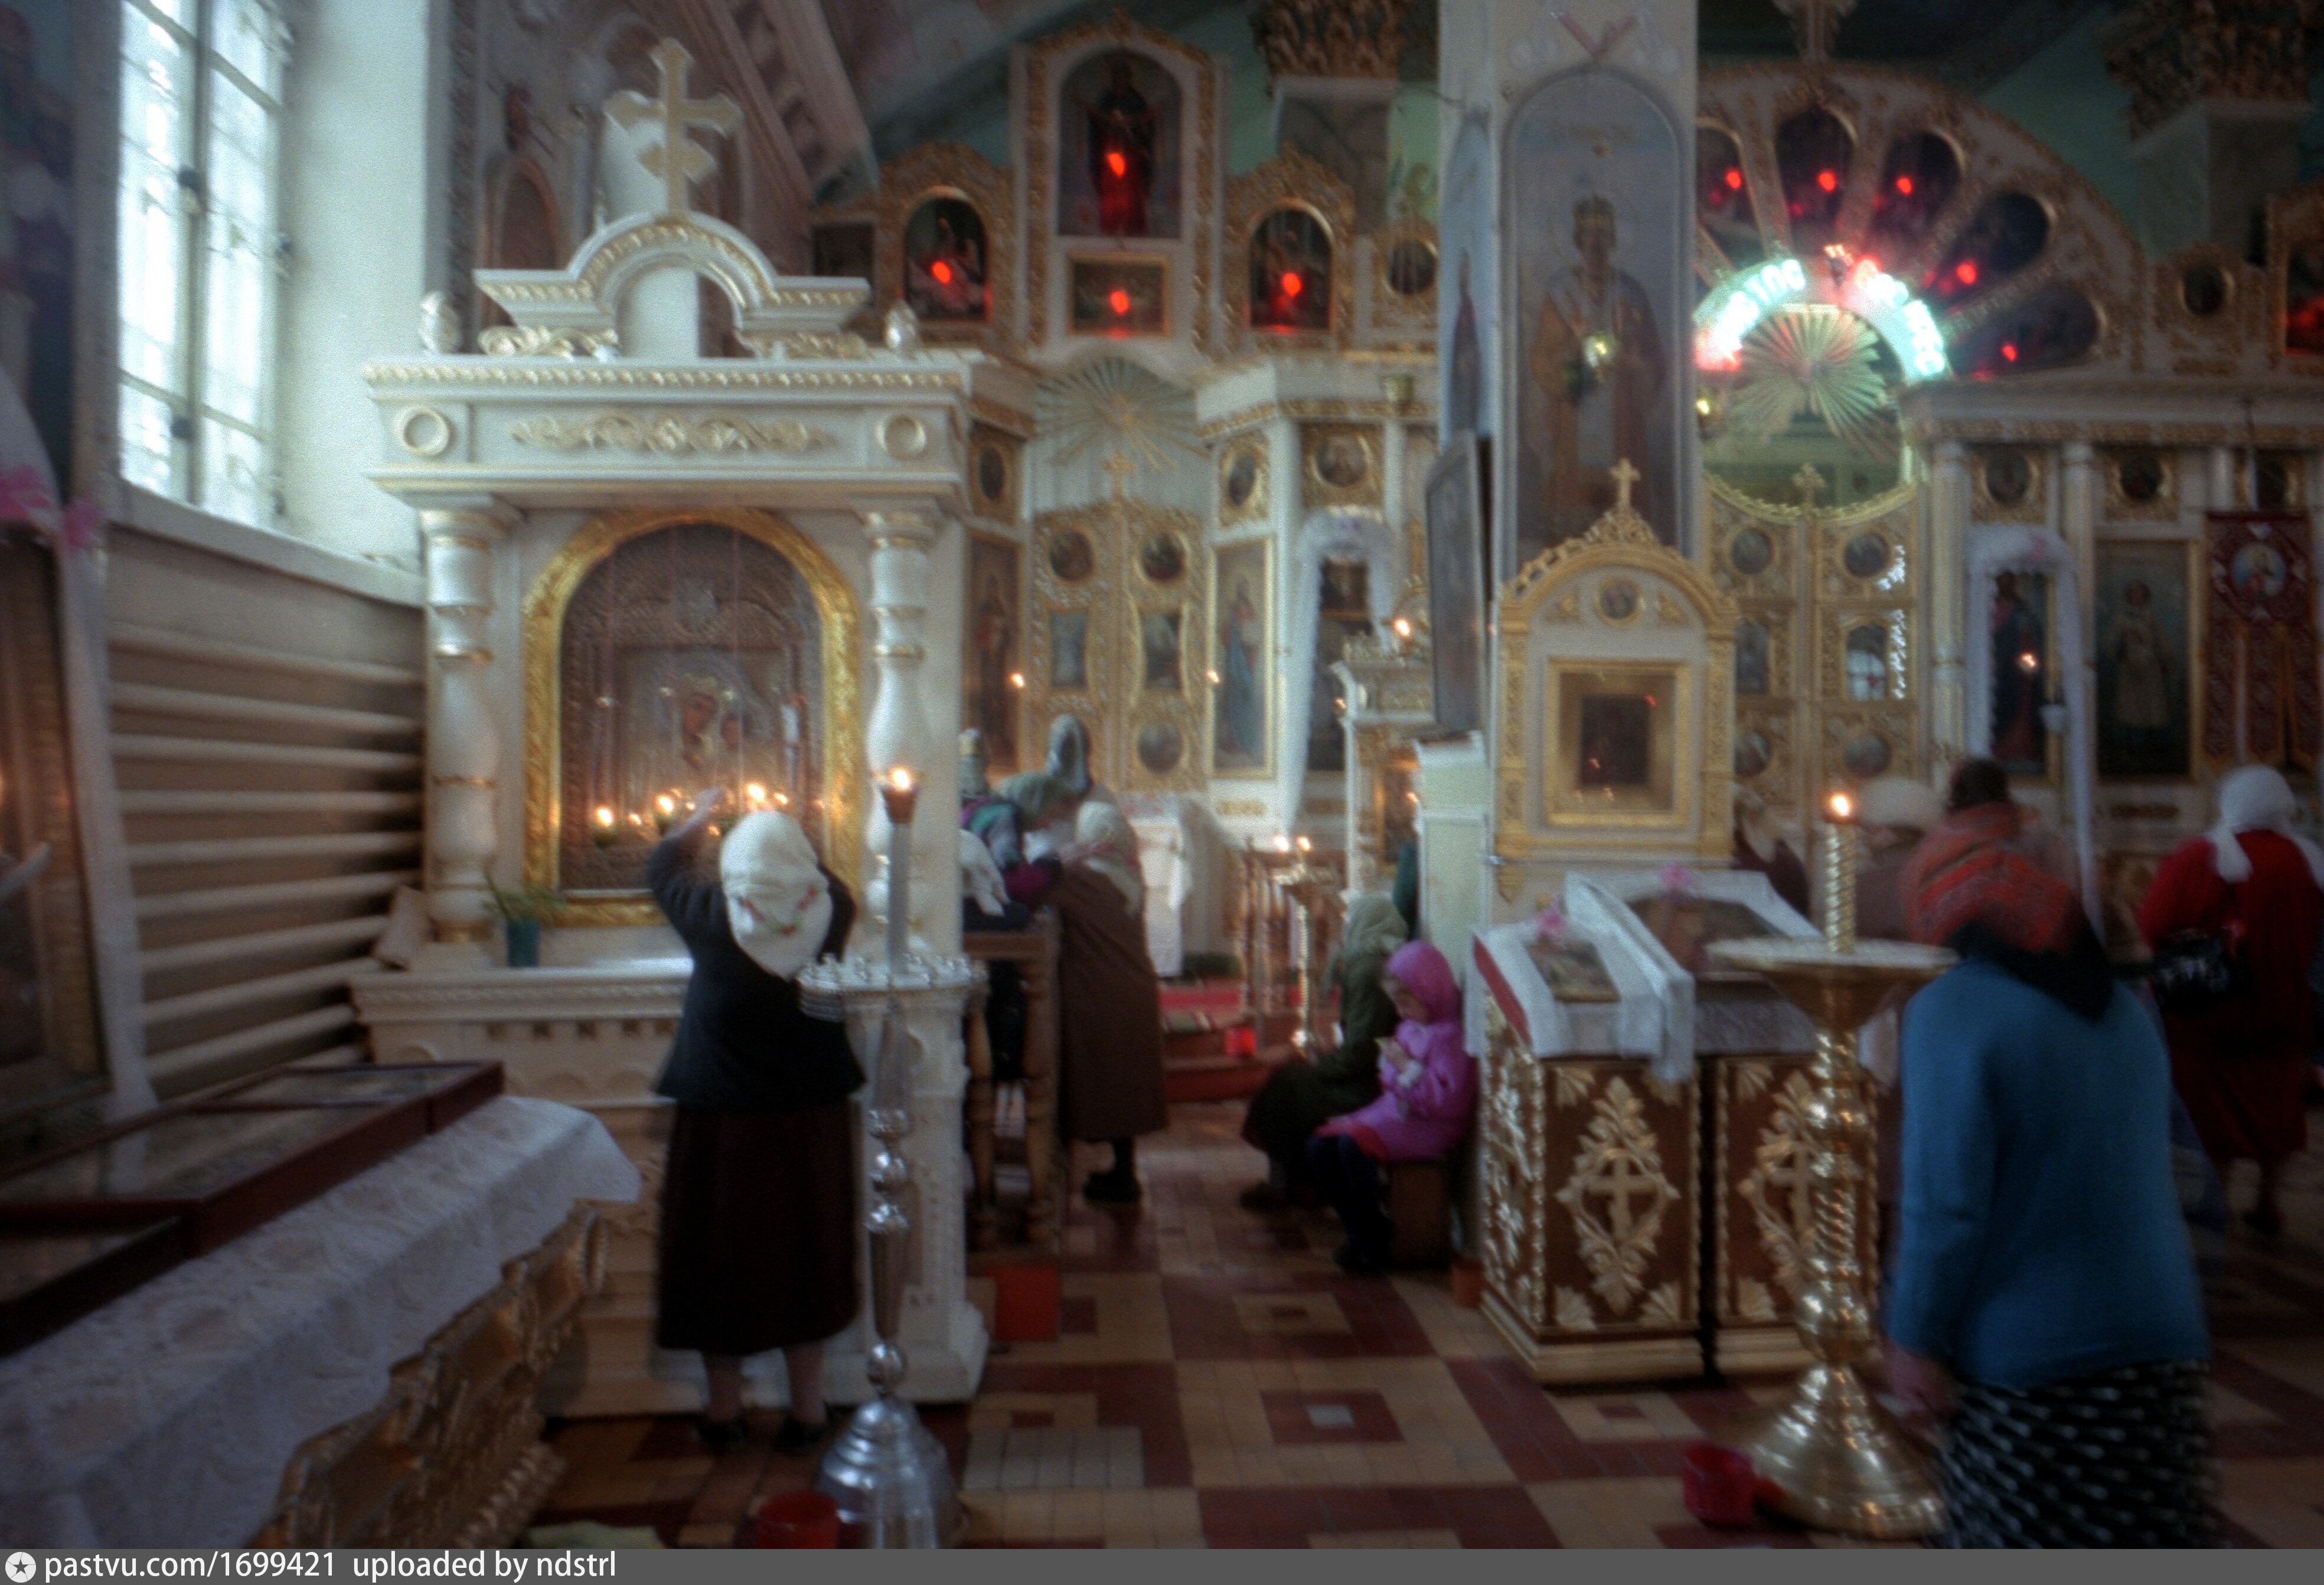 петропавловский собор в луганске